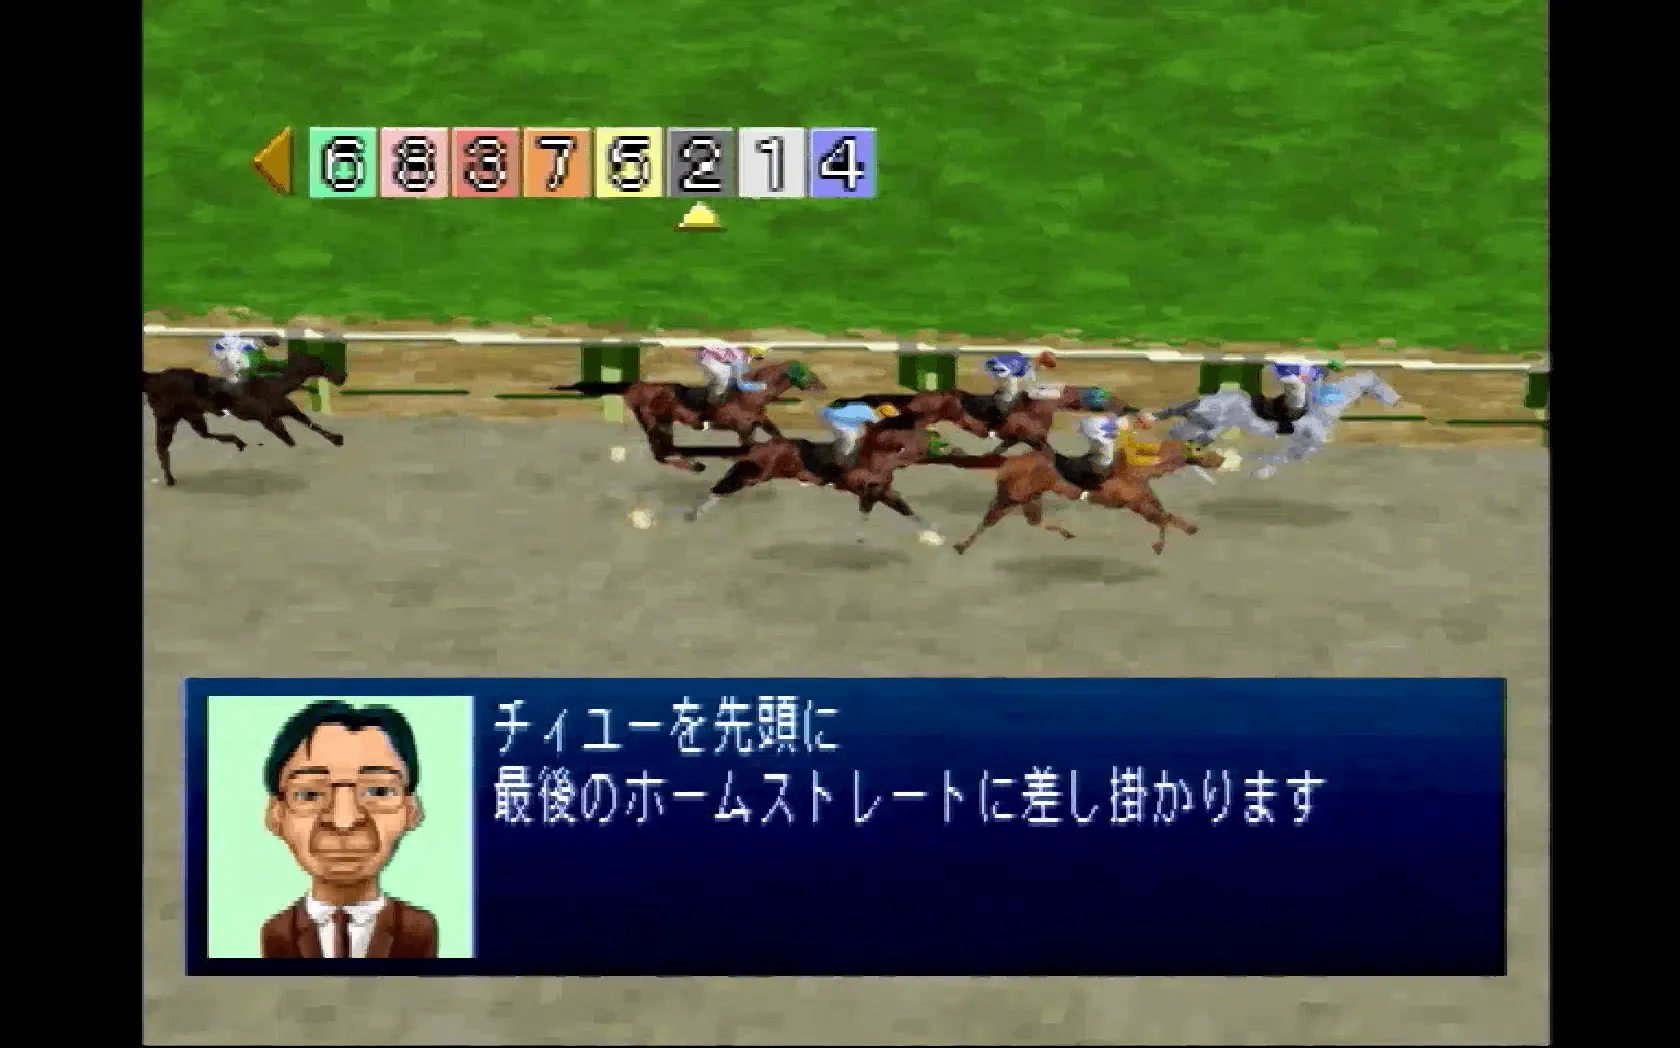 『ディスクダービー 名馬を作ろう!!』のゲーム画面